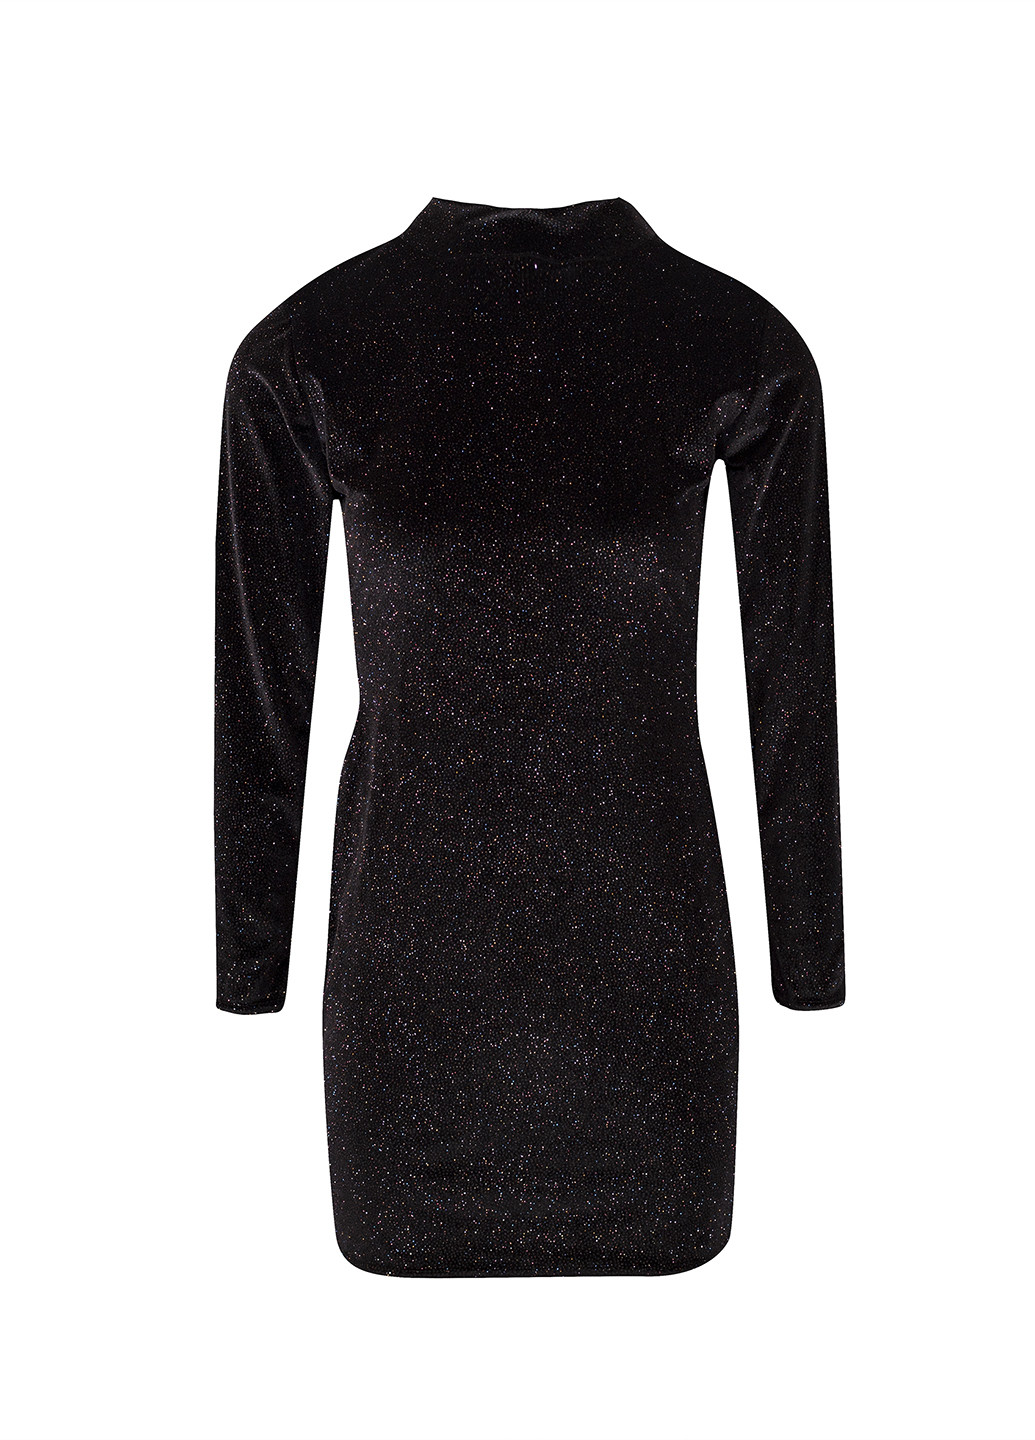 Черное кэжуал платье платье-водолазка Glamorous с узором «перец с солью»